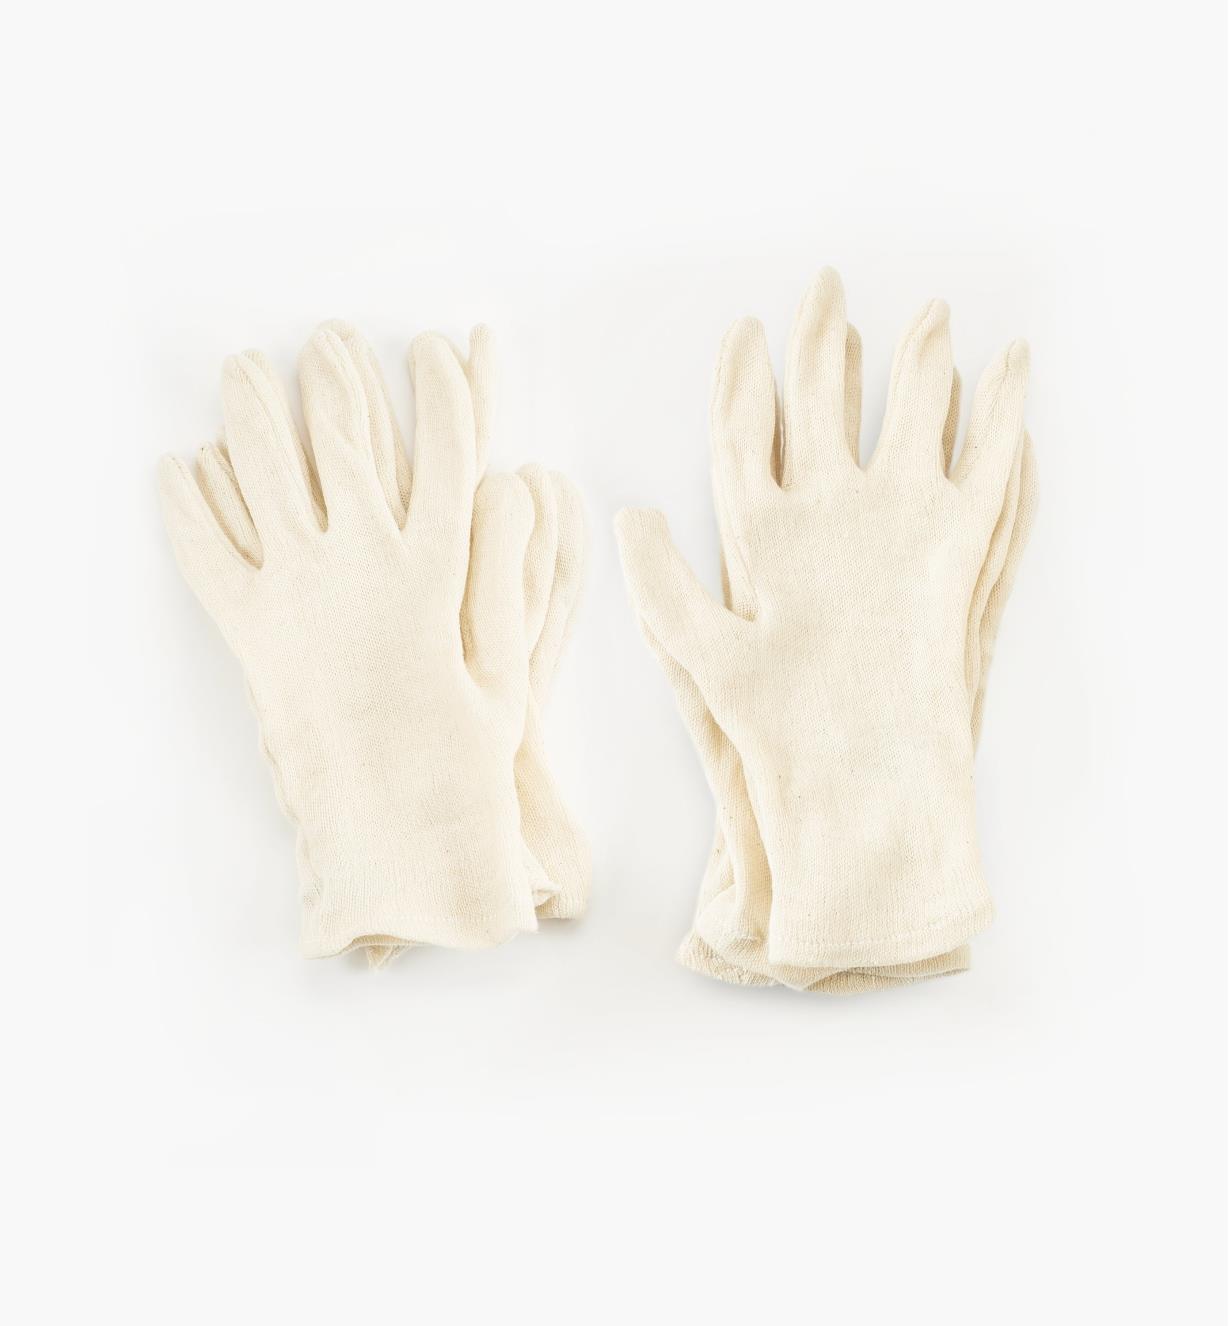 67K9101 - Women's Glove Liners, 3 pr.